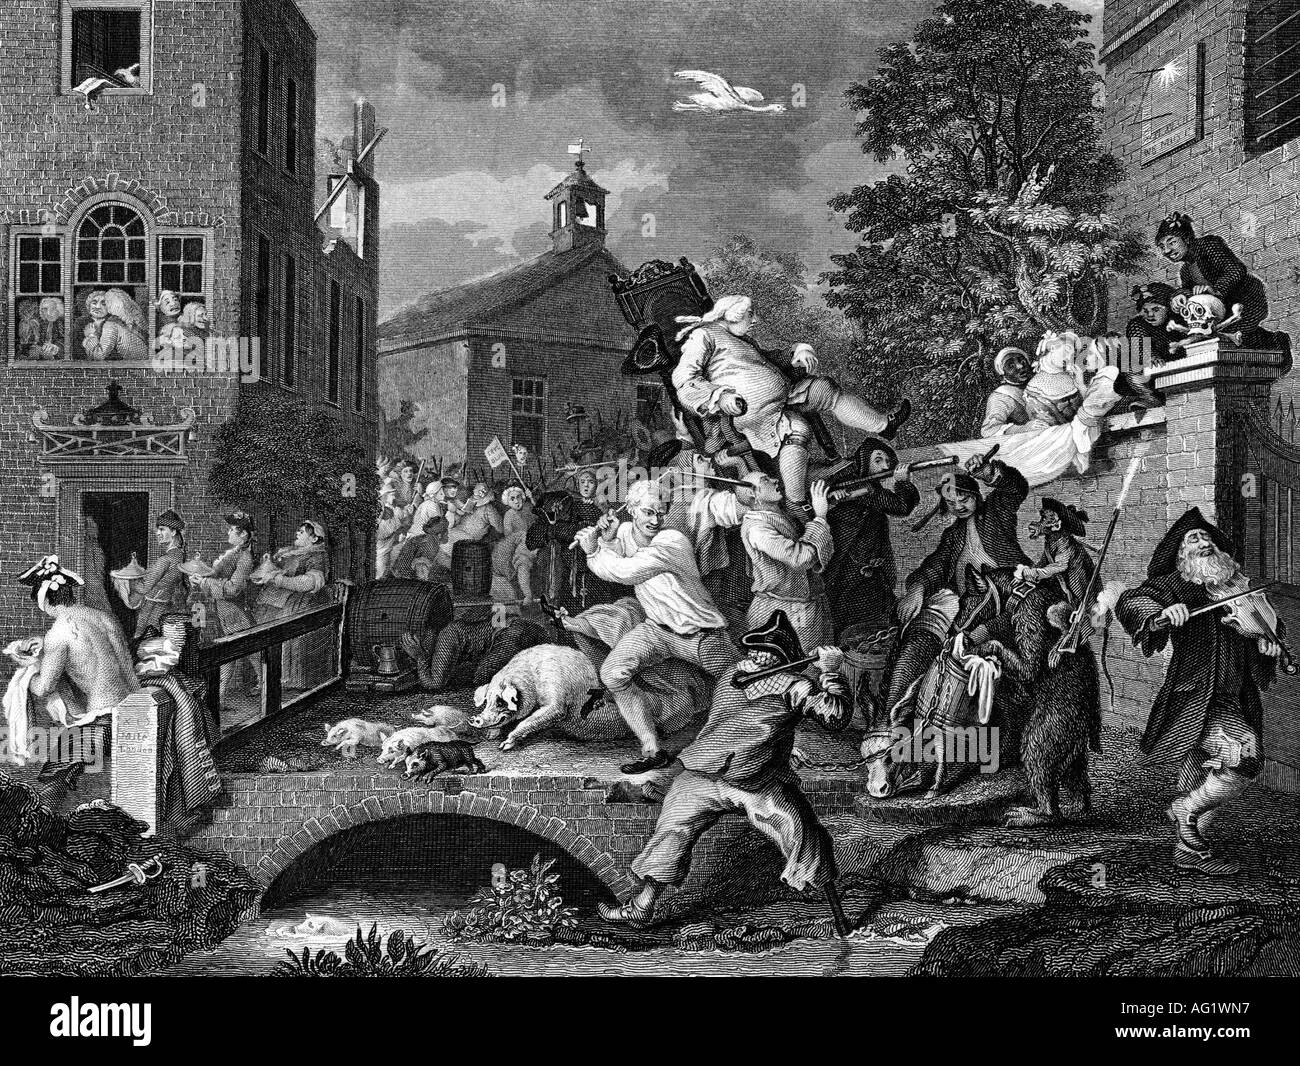 Hogarth, William, 10.11.1697 - 16.10.1764, peintre et graveur anglais, travail, 'l'élection', gravure par T.E. Nicholson après la peinture, du 19e siècle, l'artiste a le droit d'auteur , de ne pas être effacé Banque D'Images